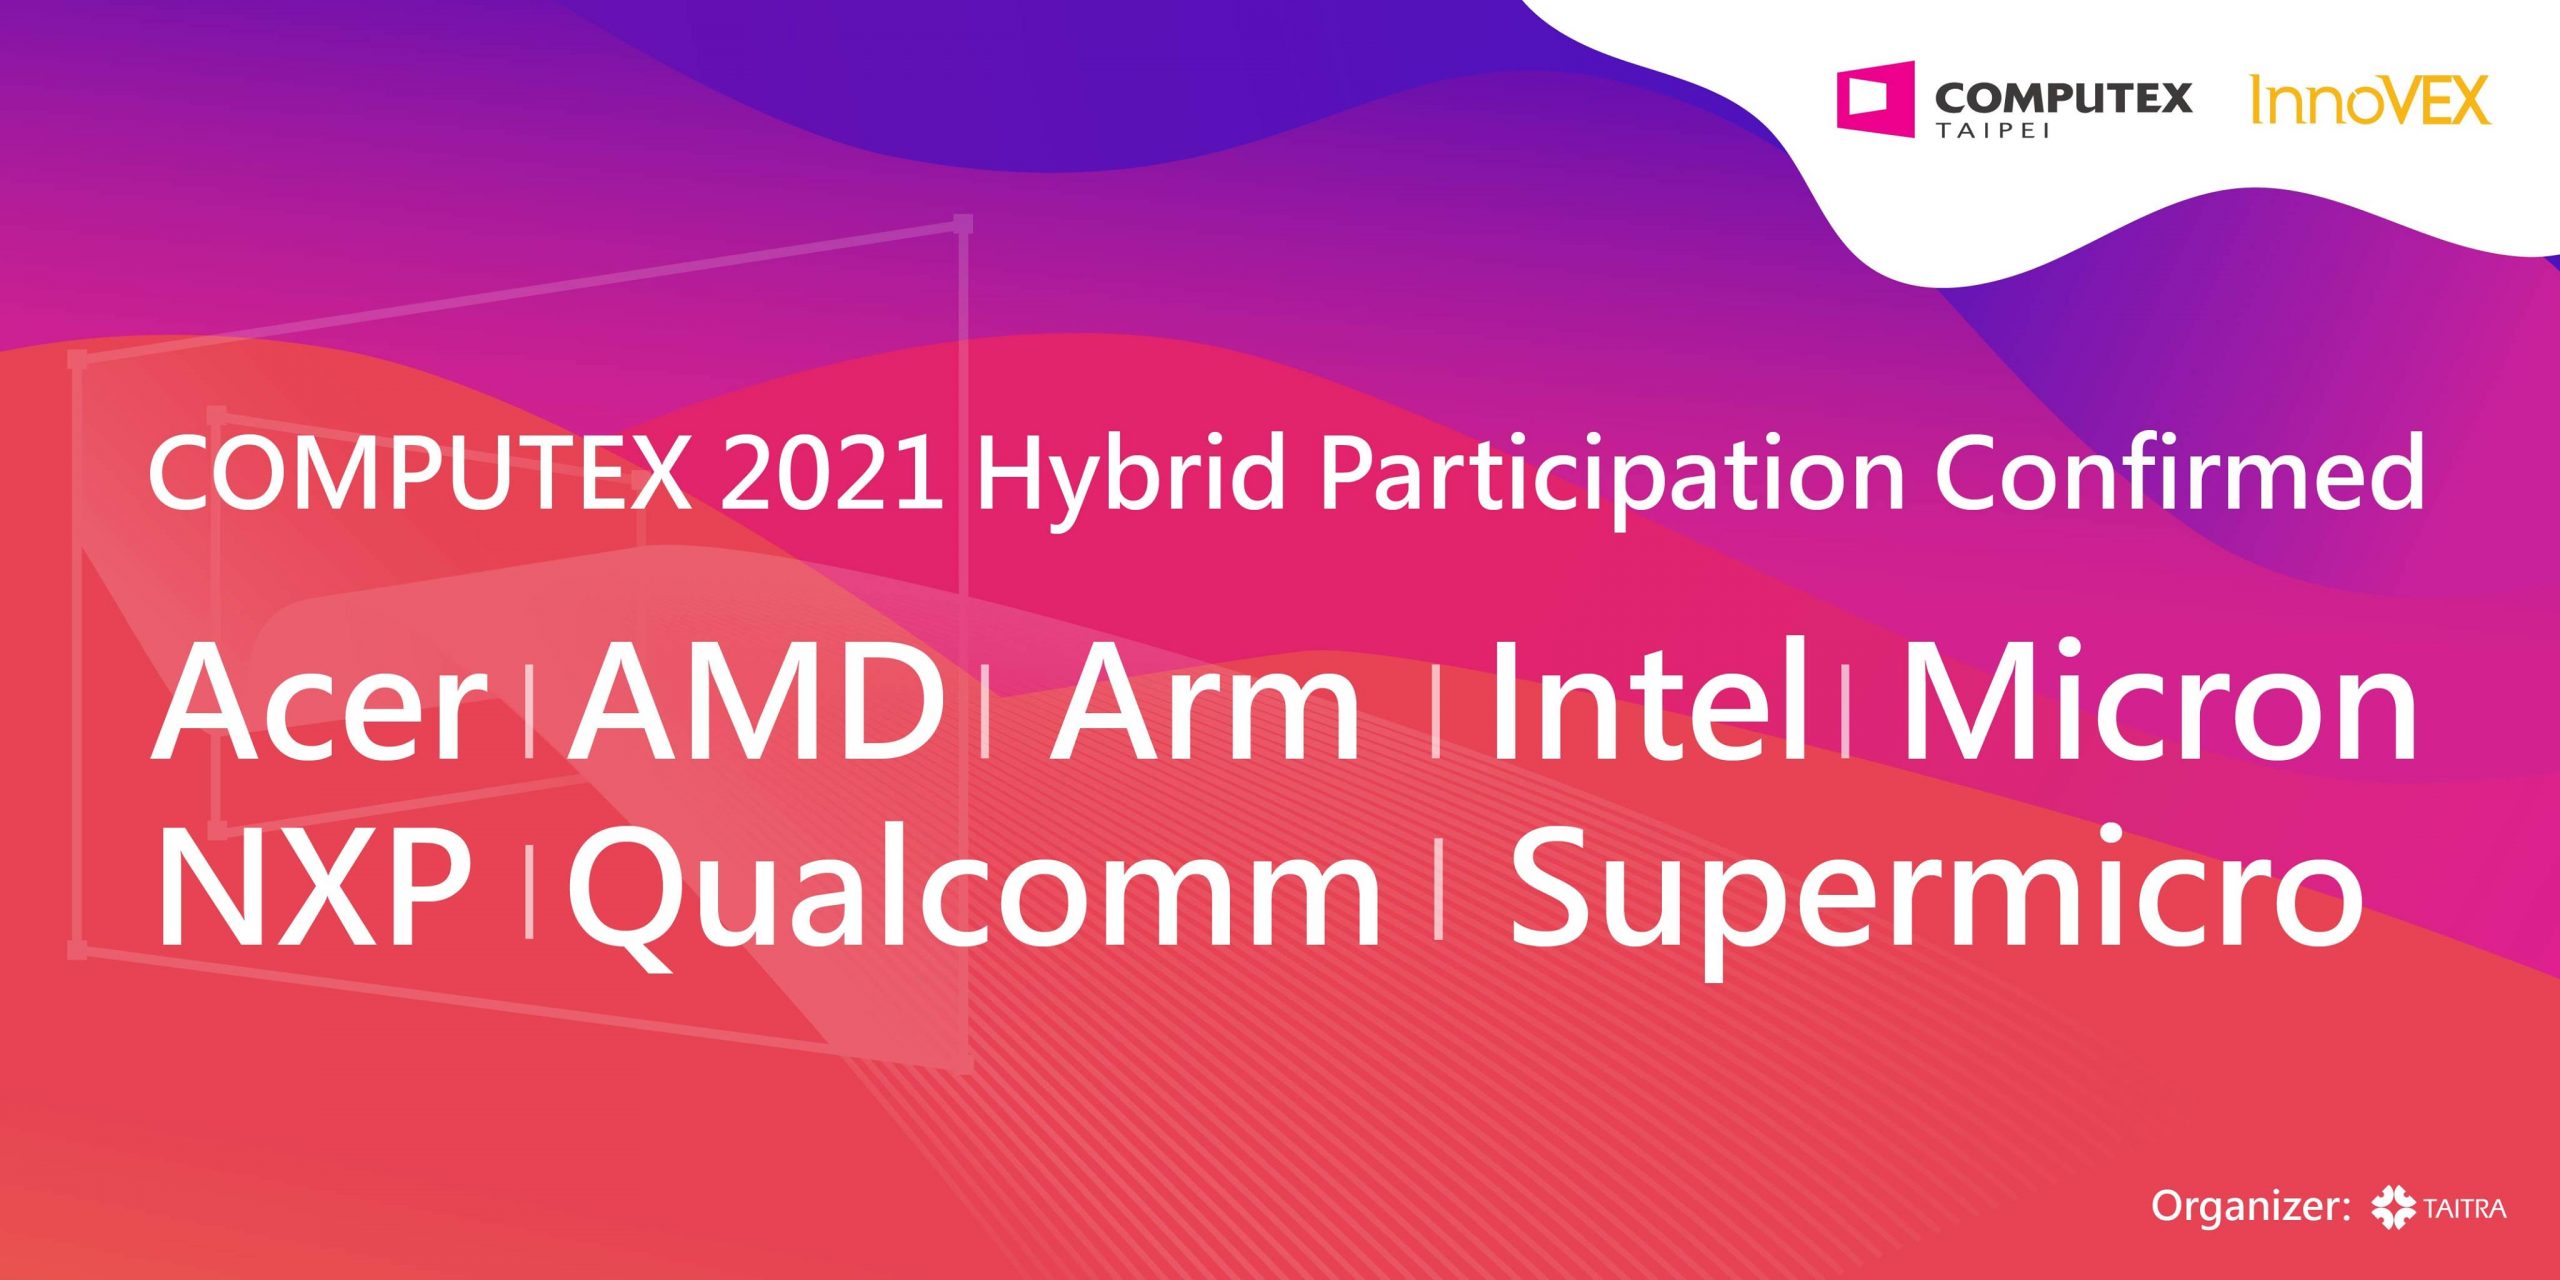 Acer, AMD, Arm, Intel, Micron, NXP, Qualcomm và Supermicro xác nhận sẽ tham gia COMPUTEX 2021 Hybrid